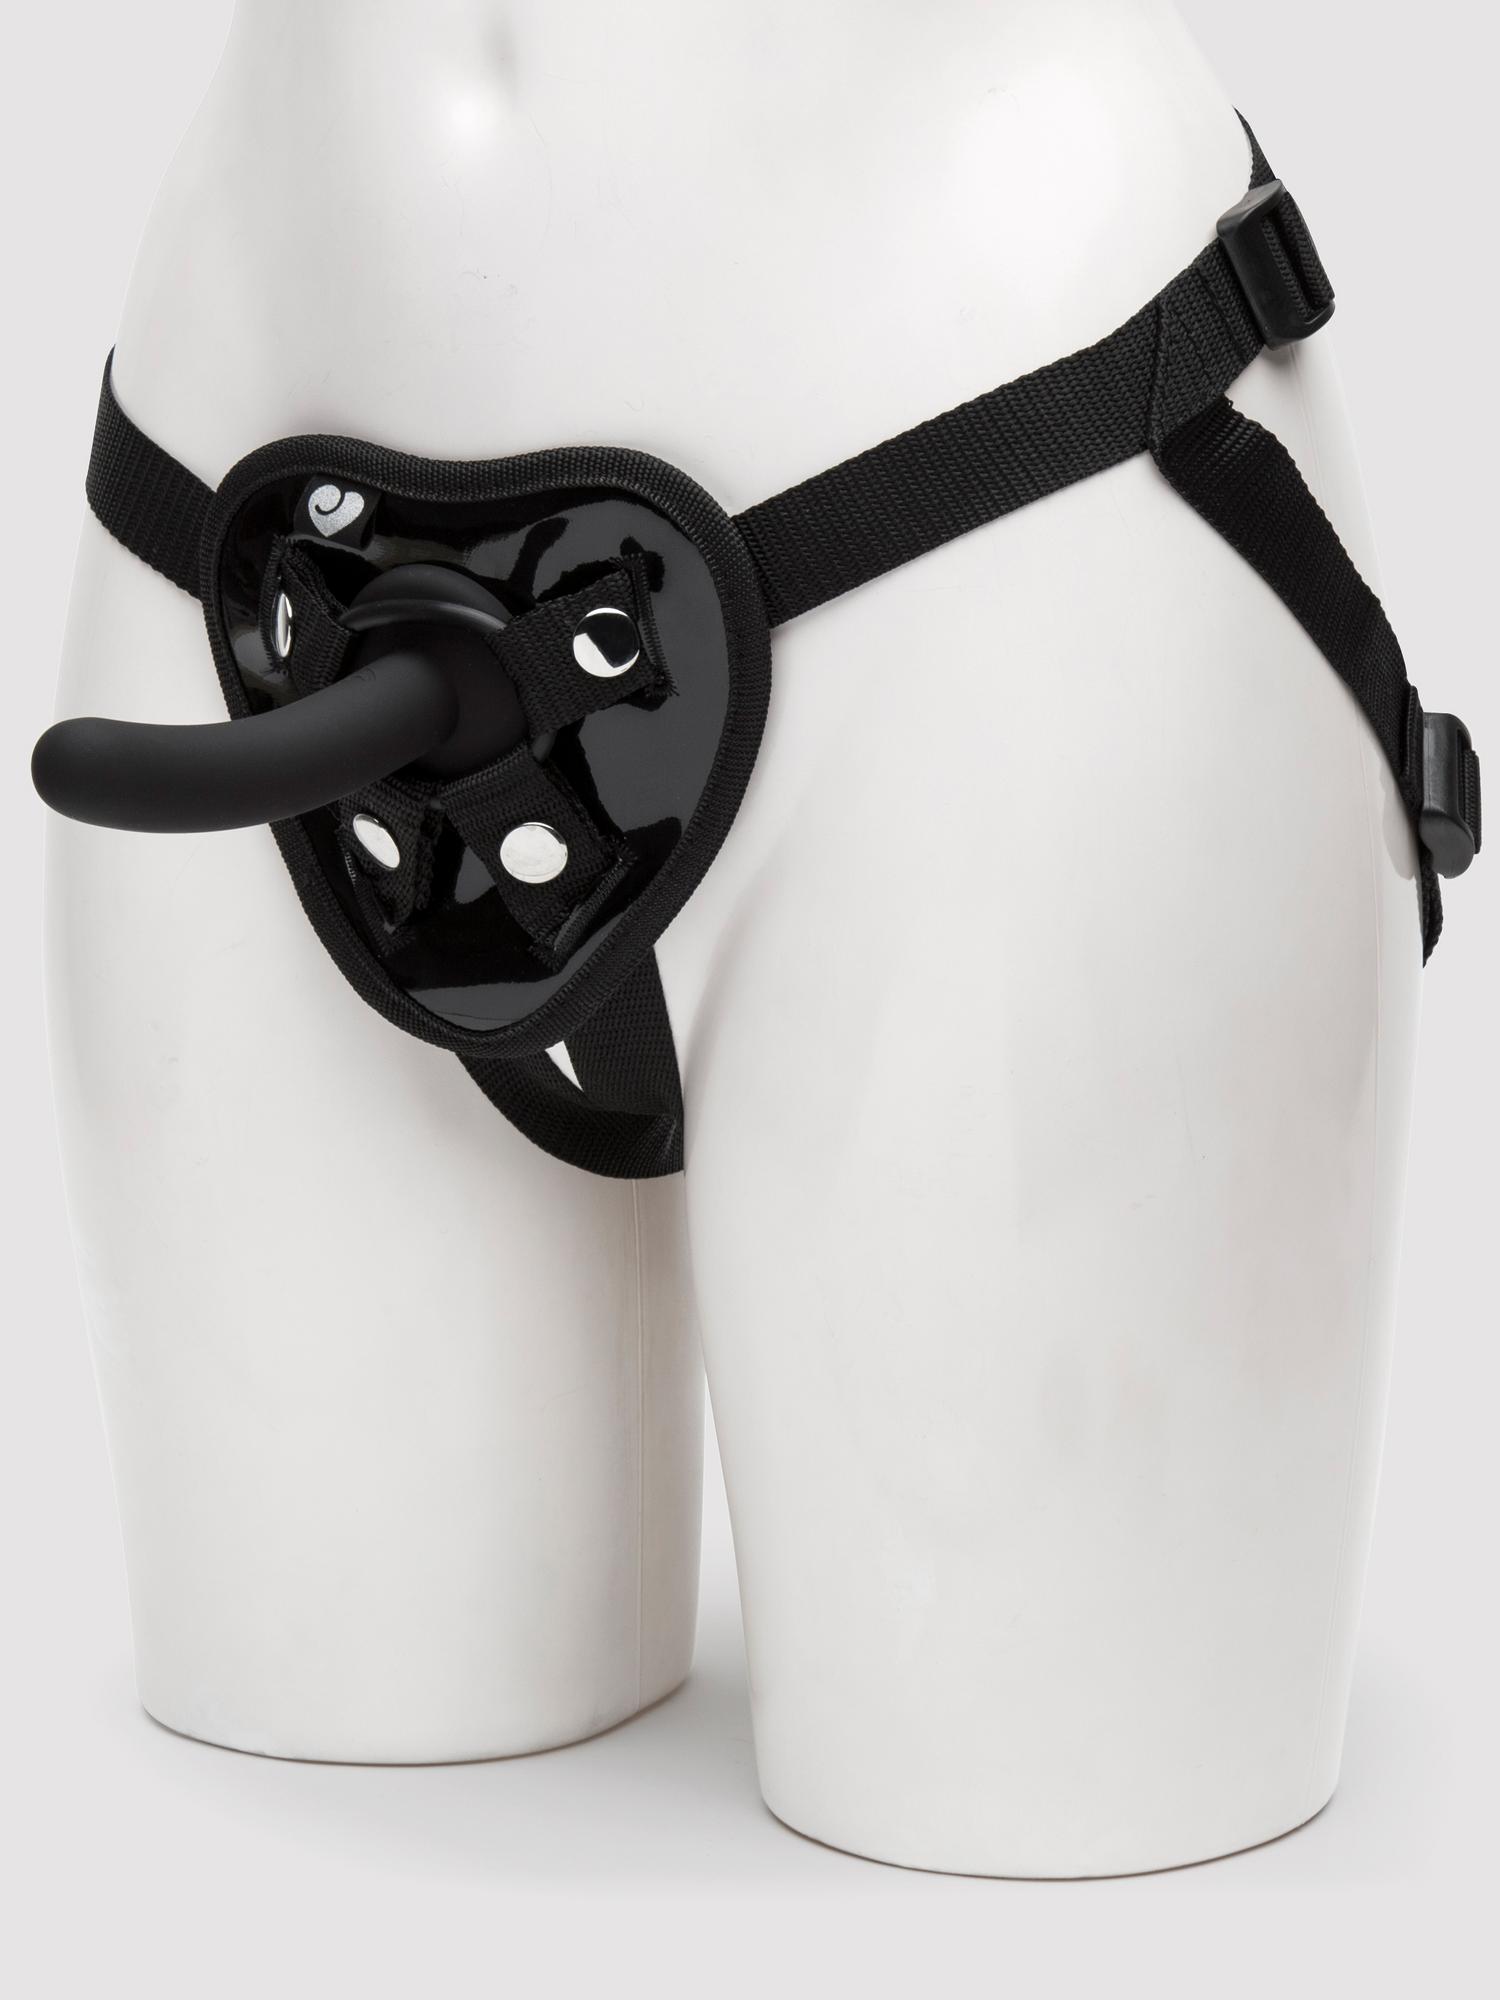 Lovehoney Beginner's Unisex Strap-On Harness Kit with 5 Inch Pegging Dildo. Slide 1